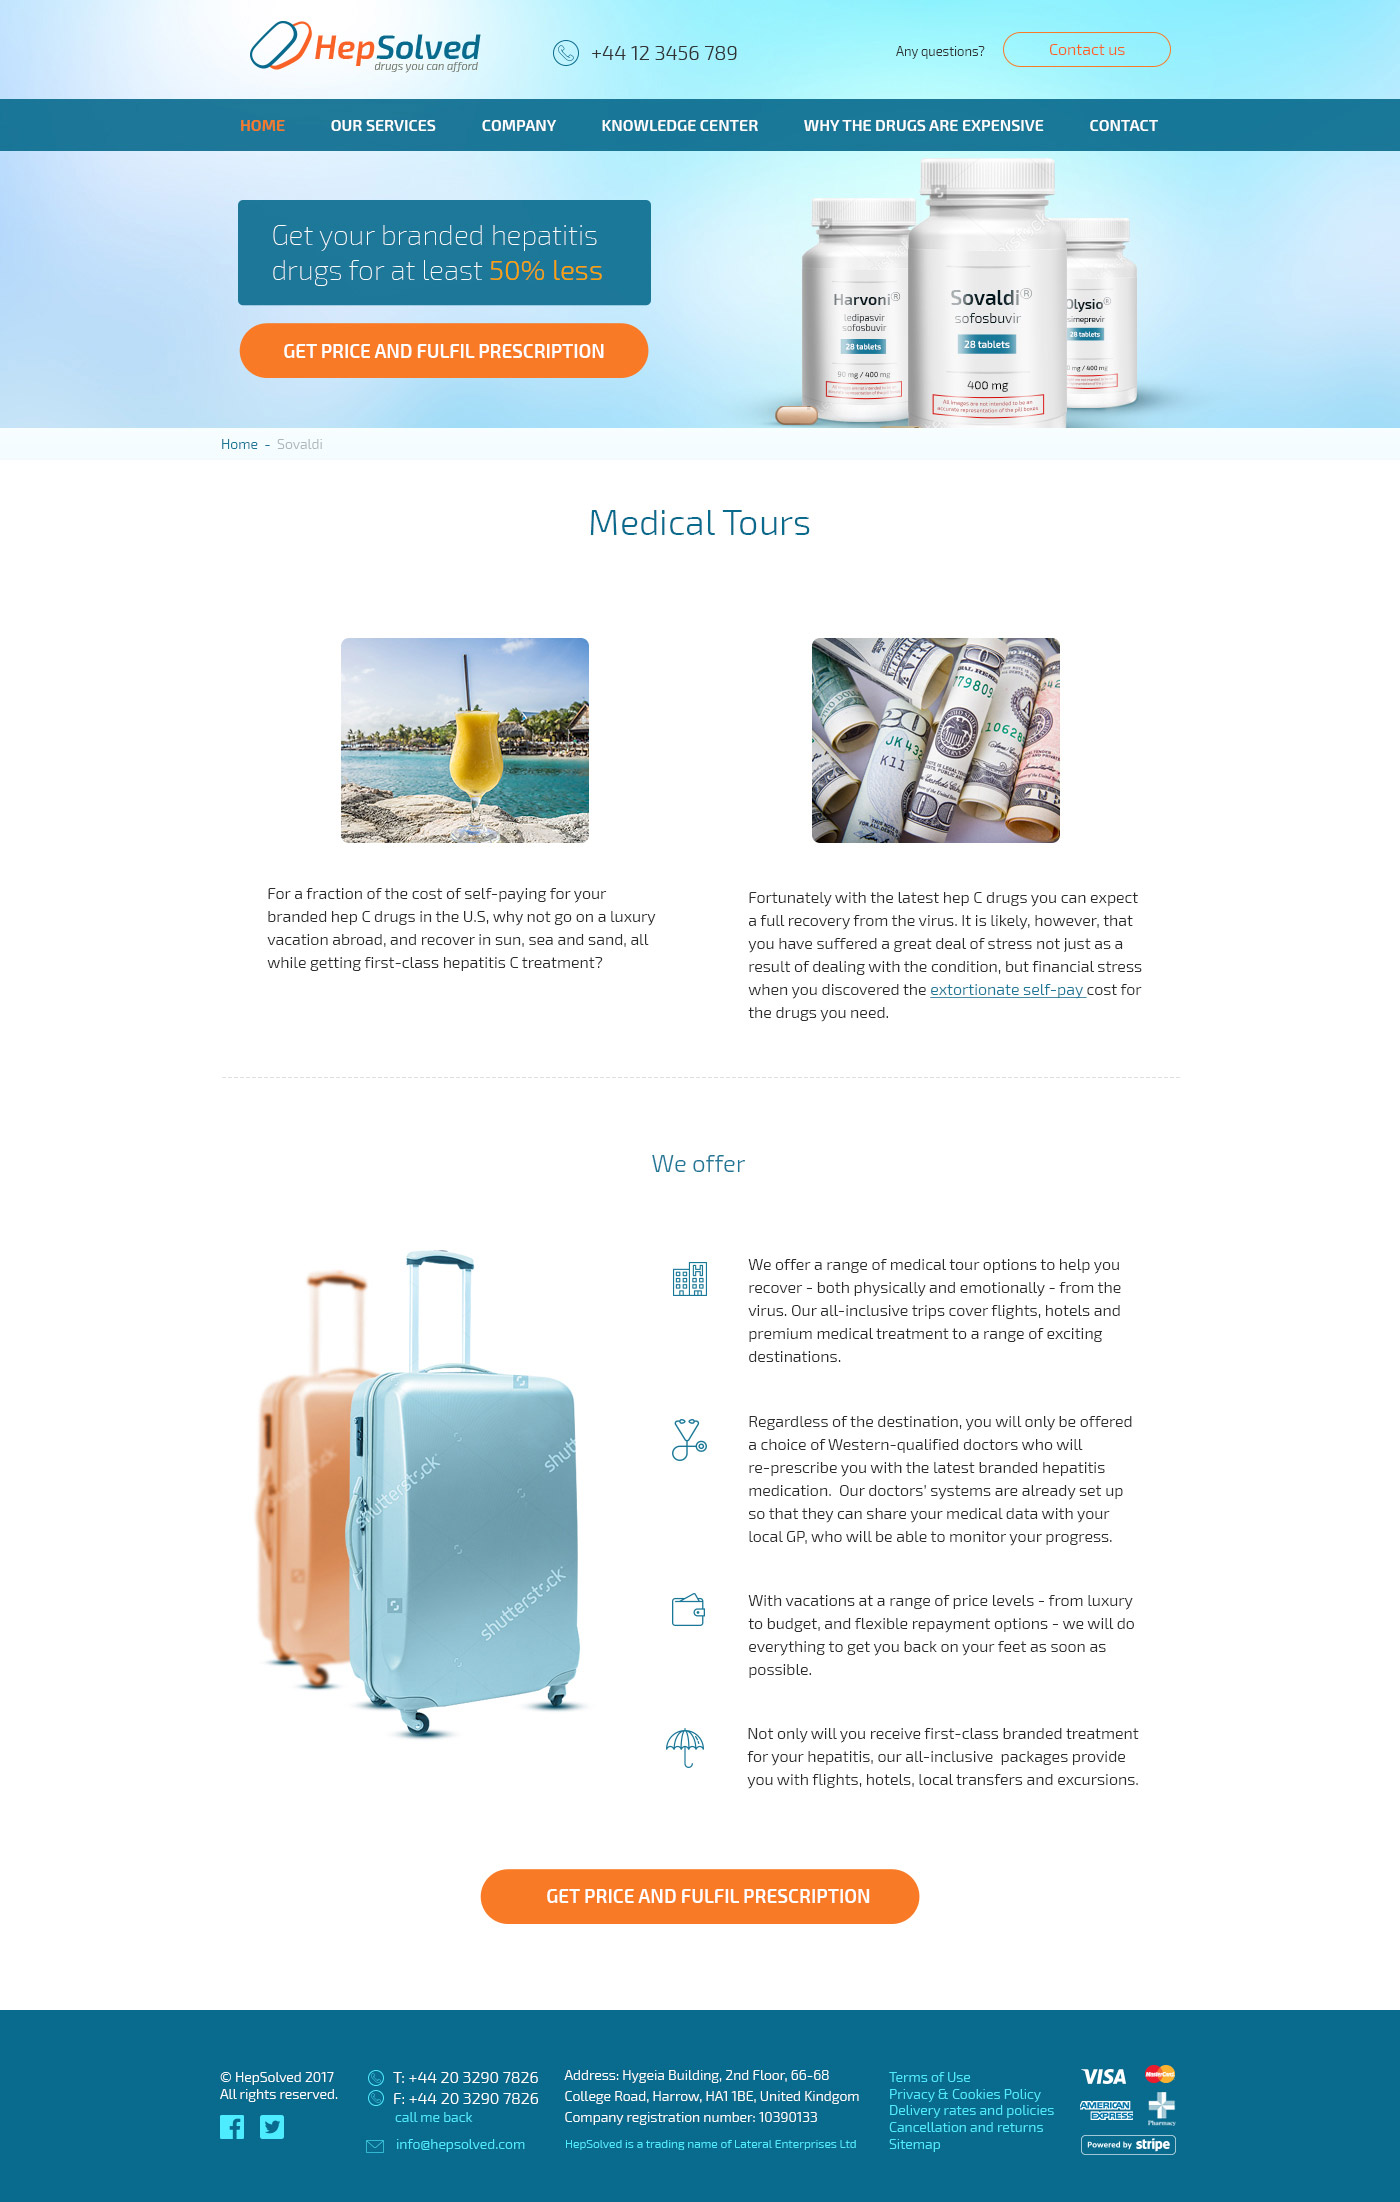 Дизайн страницы медицинских туров для сайта компании HepSolved